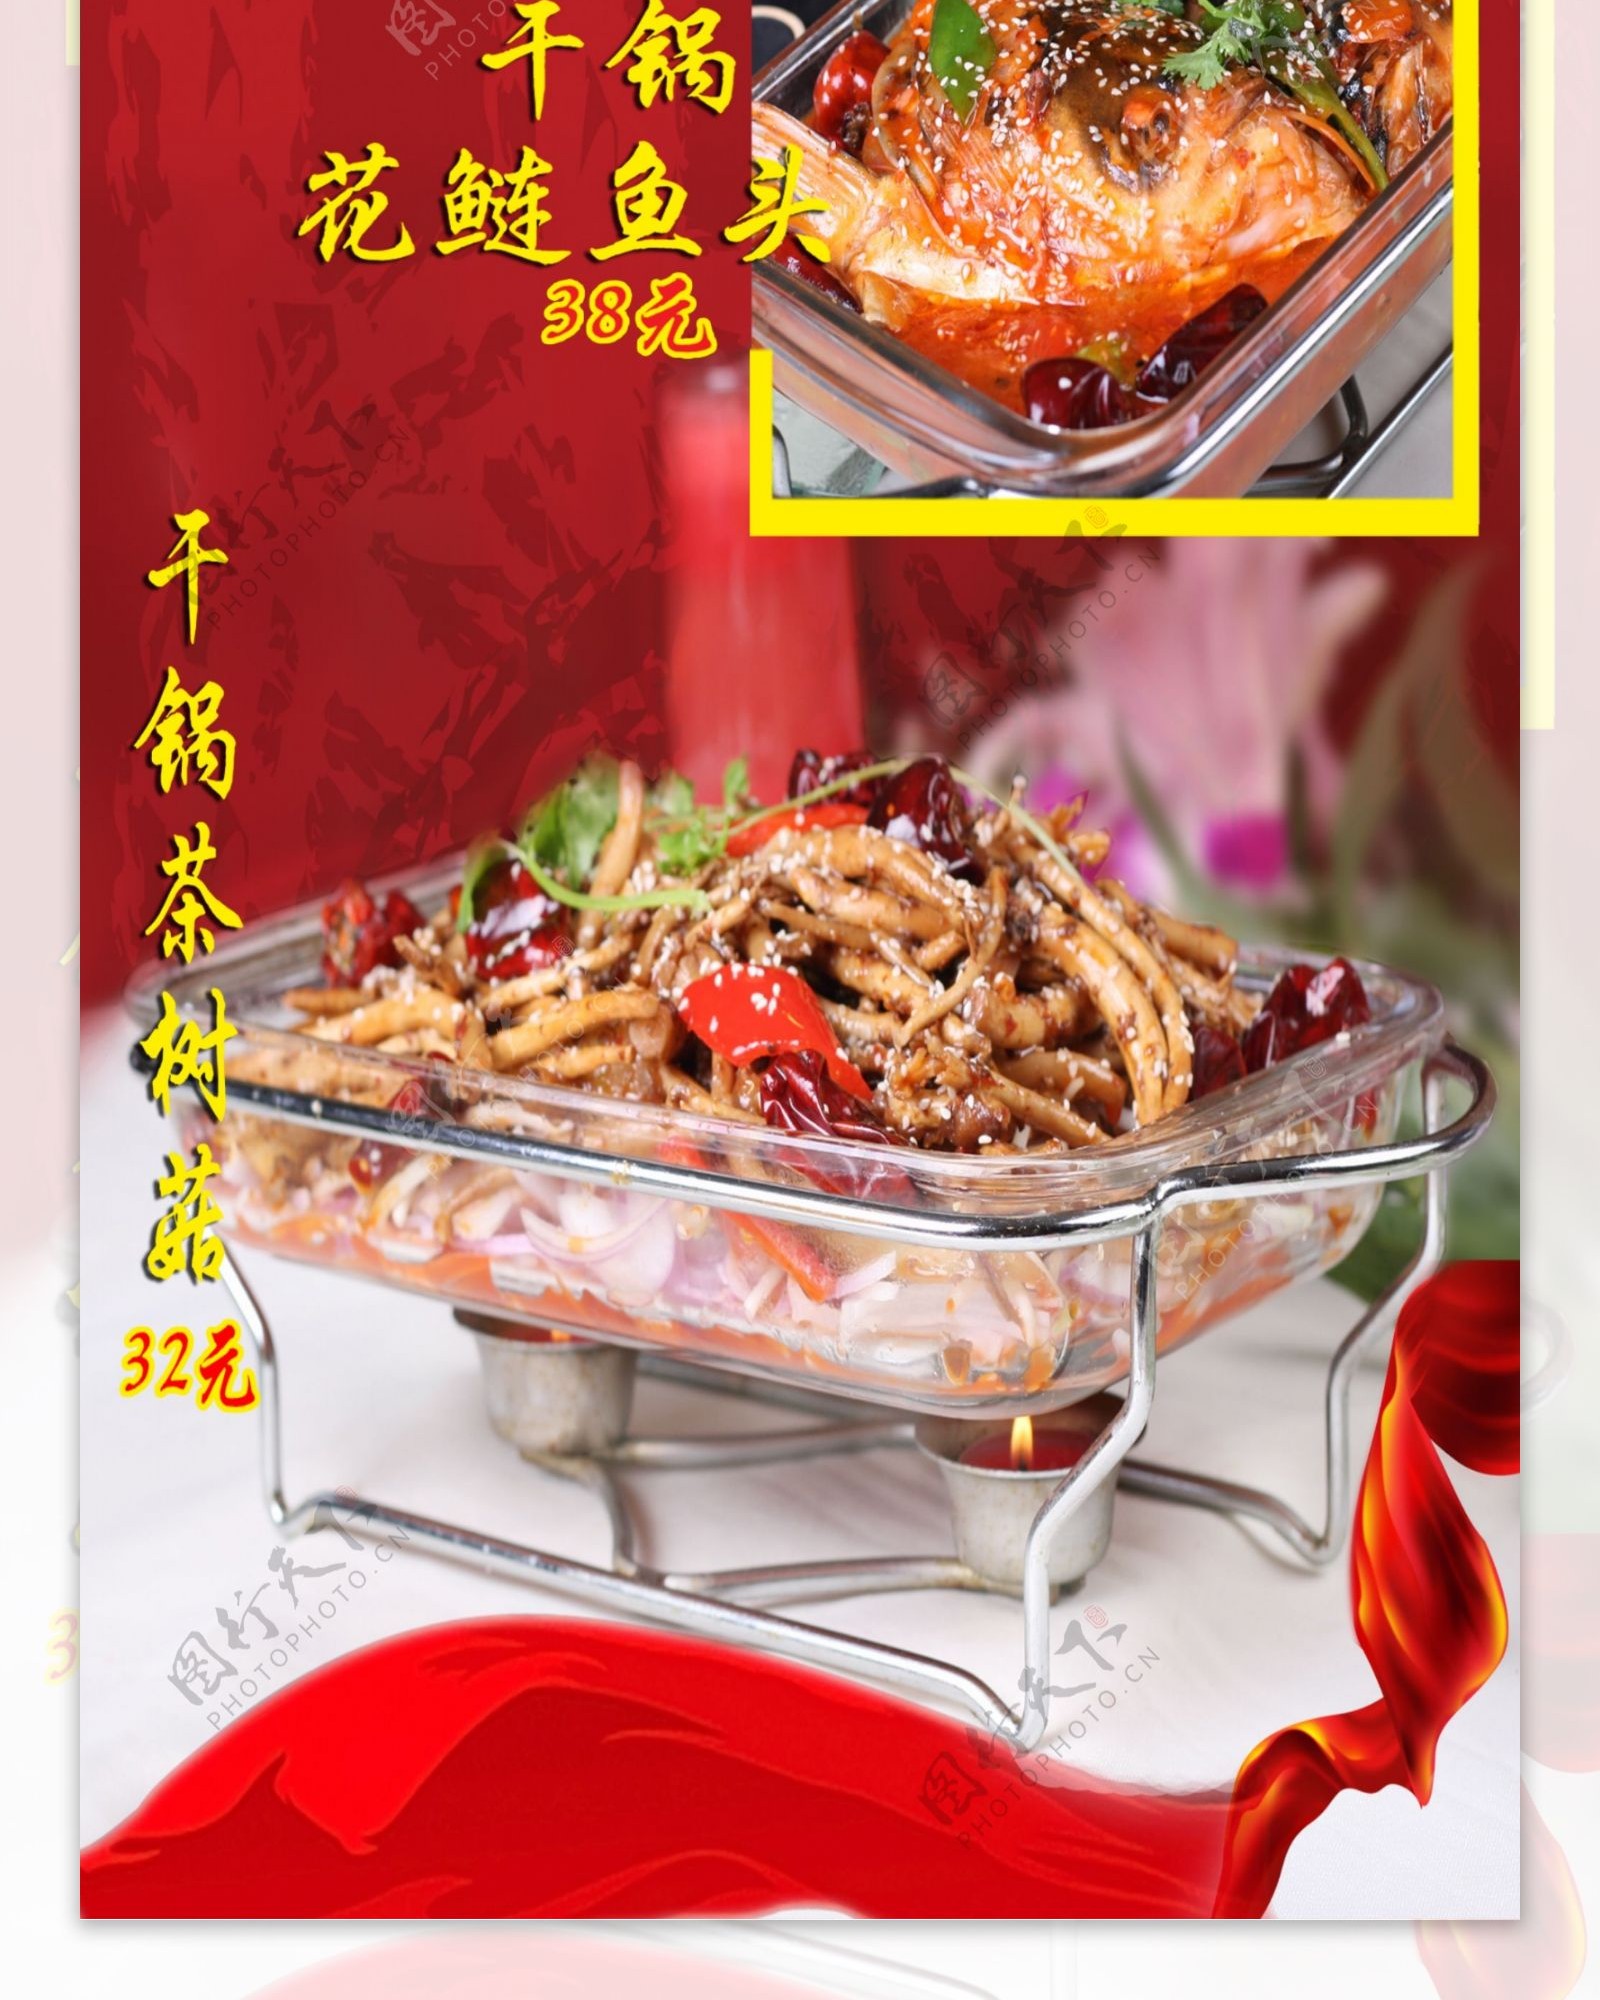 精美干锅食物展架设计模板素材画面